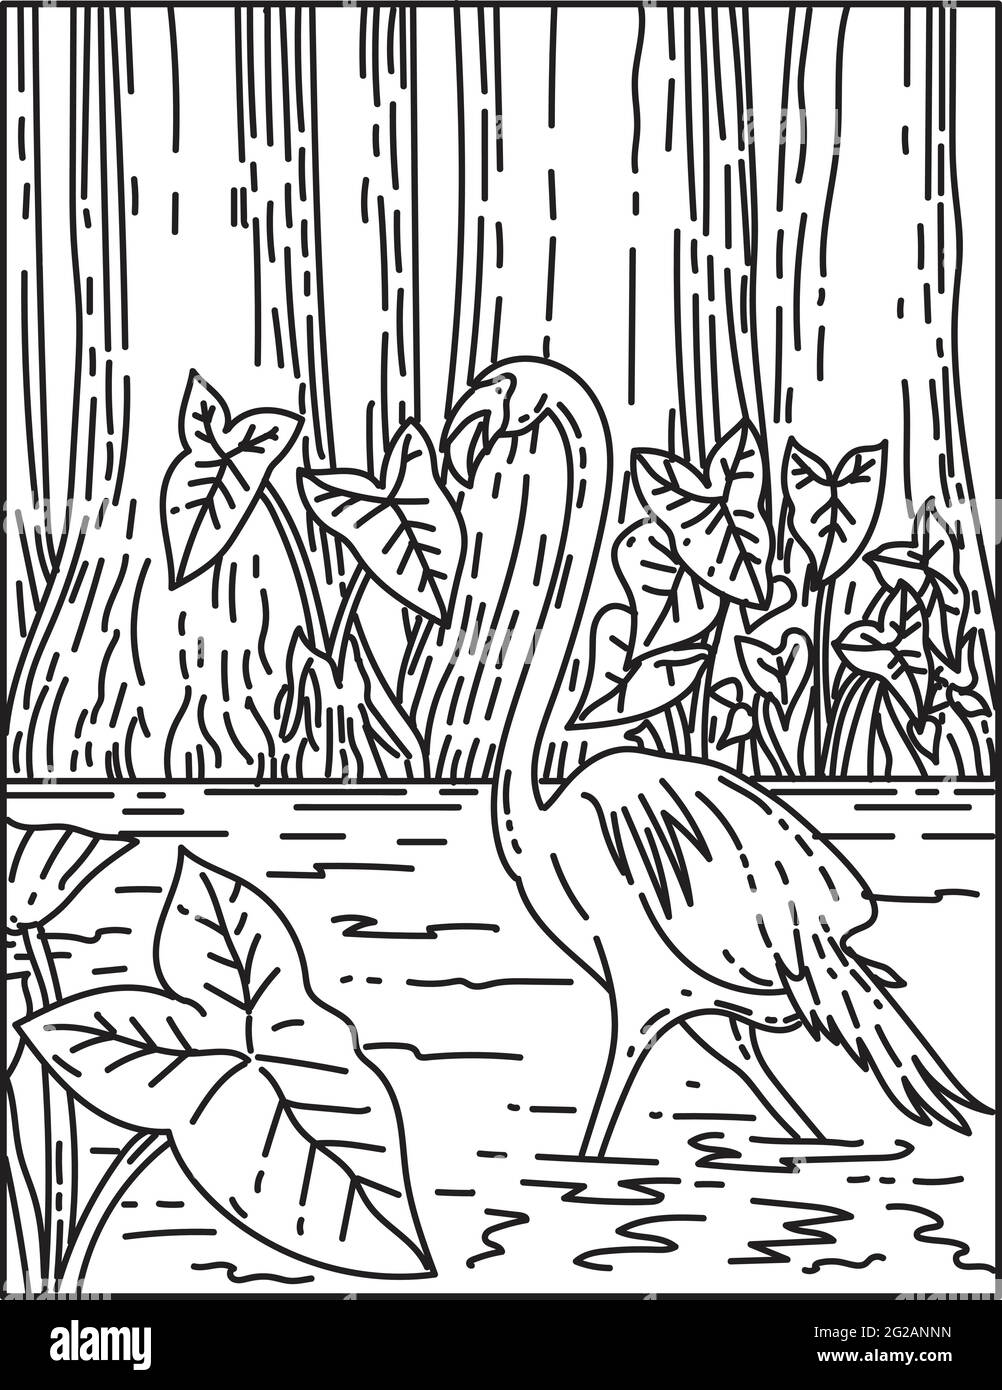 Monolinie Illustration eines Flamingos wating in subtropischer Wildnis des Everglades National Park, Florida, Vereinigte Staaten von Amerika in retro bla getan Stock Vektor